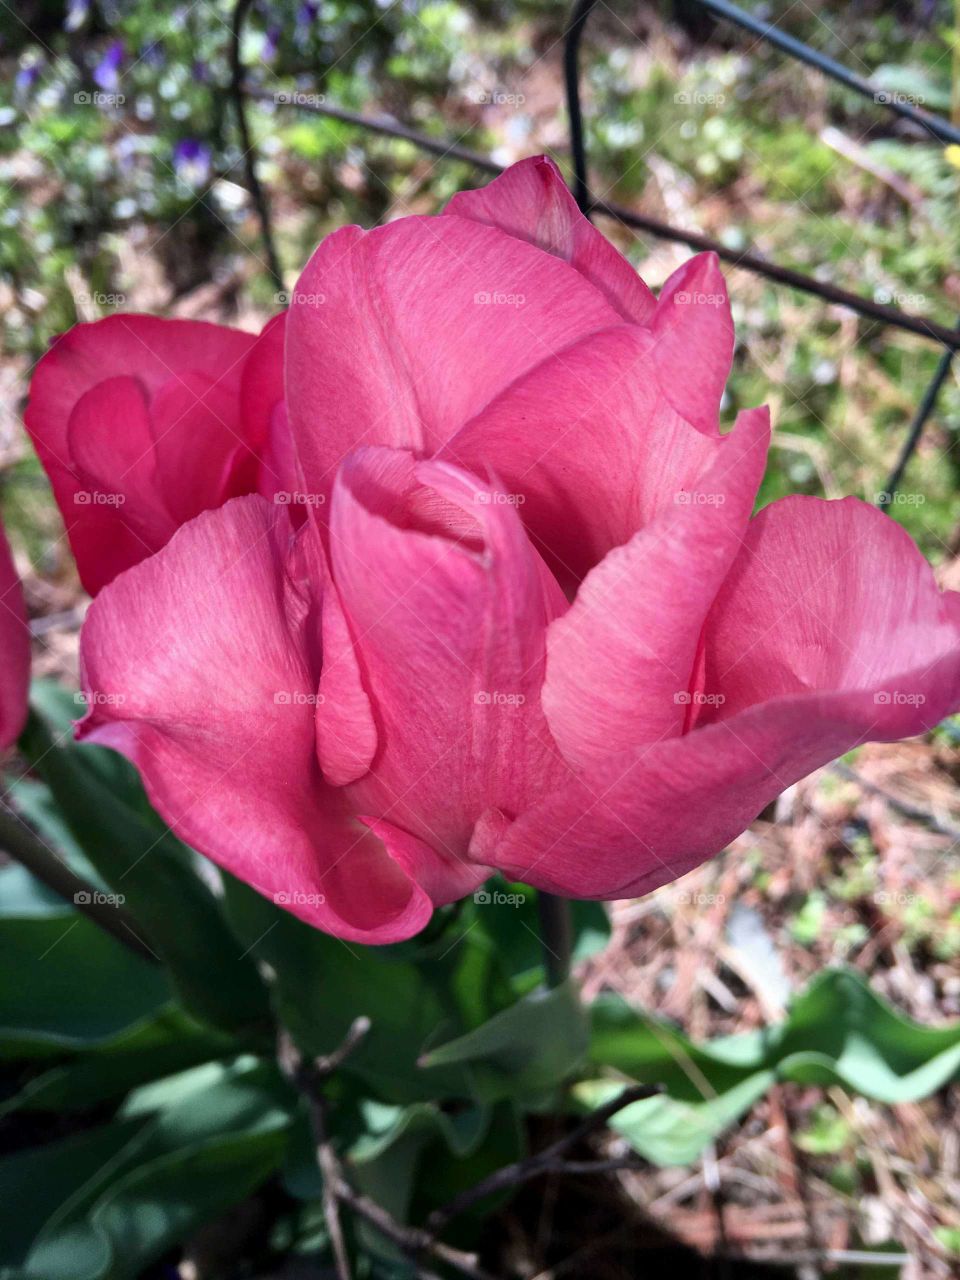 Closeup pink tulips in garden.